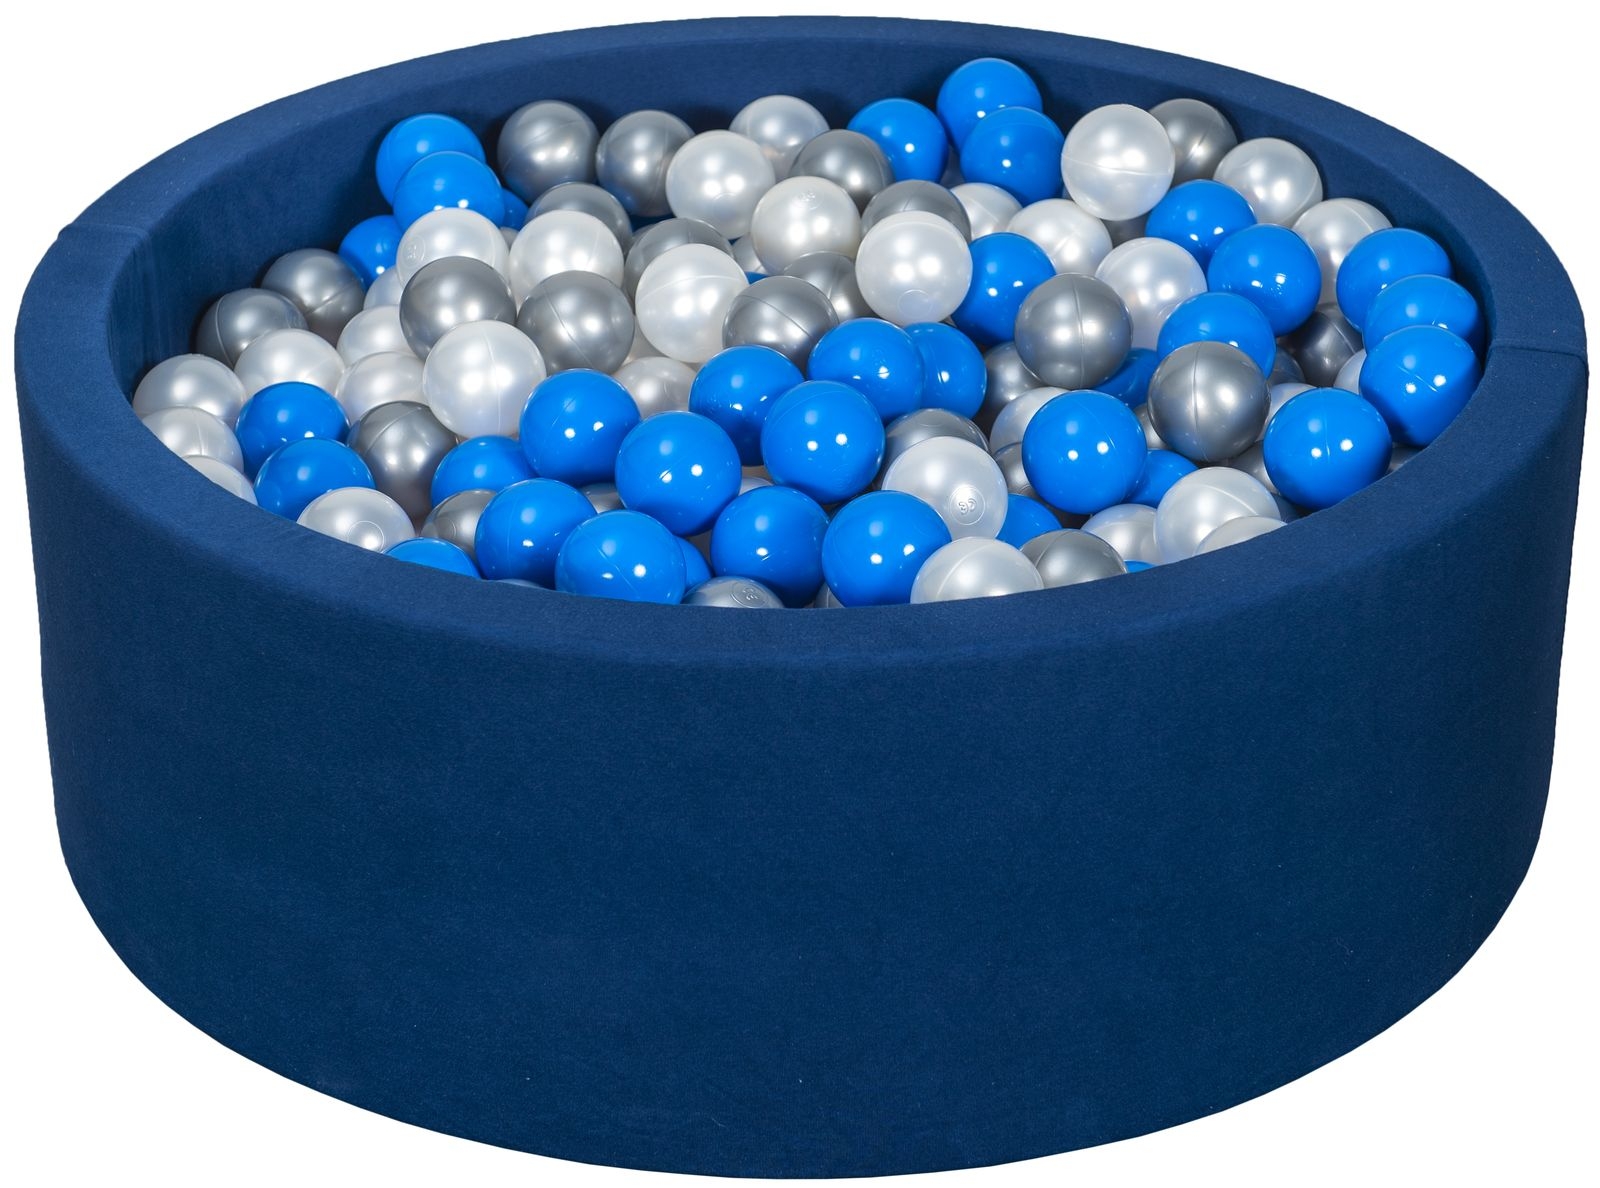 Piscina rotonda blu per bambini con 450 palline colorate